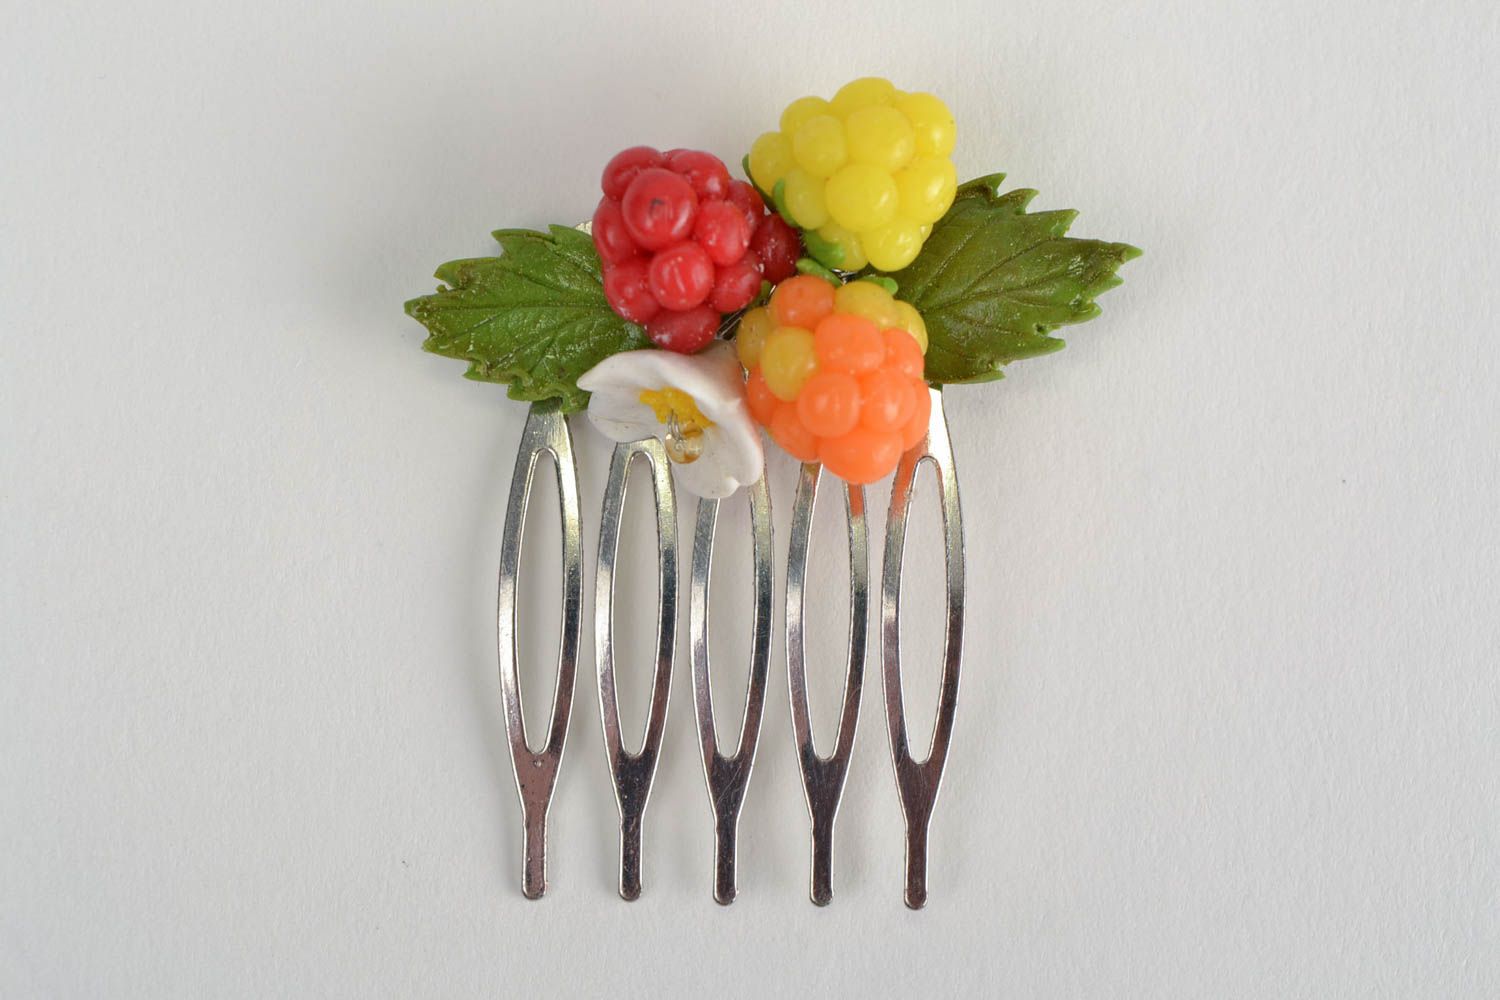 Metall Haarkamm mit Blumen und Beeren aus Polymerton bunt klein nett Handarbeit foto 3